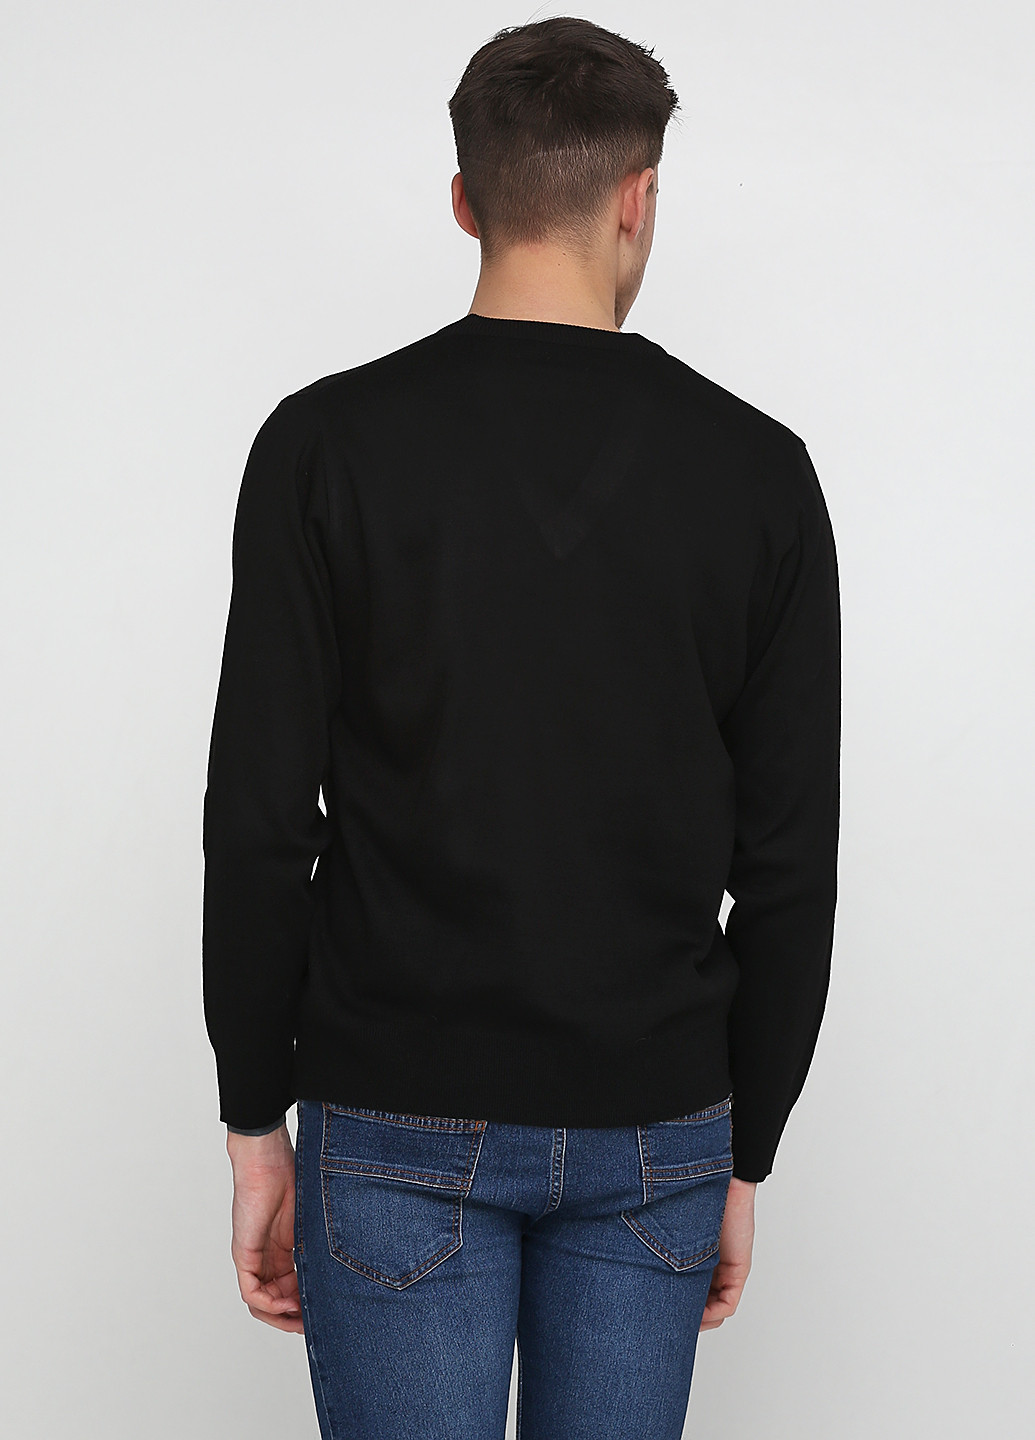 Черный демисезонный пуловер пуловер Sunteks